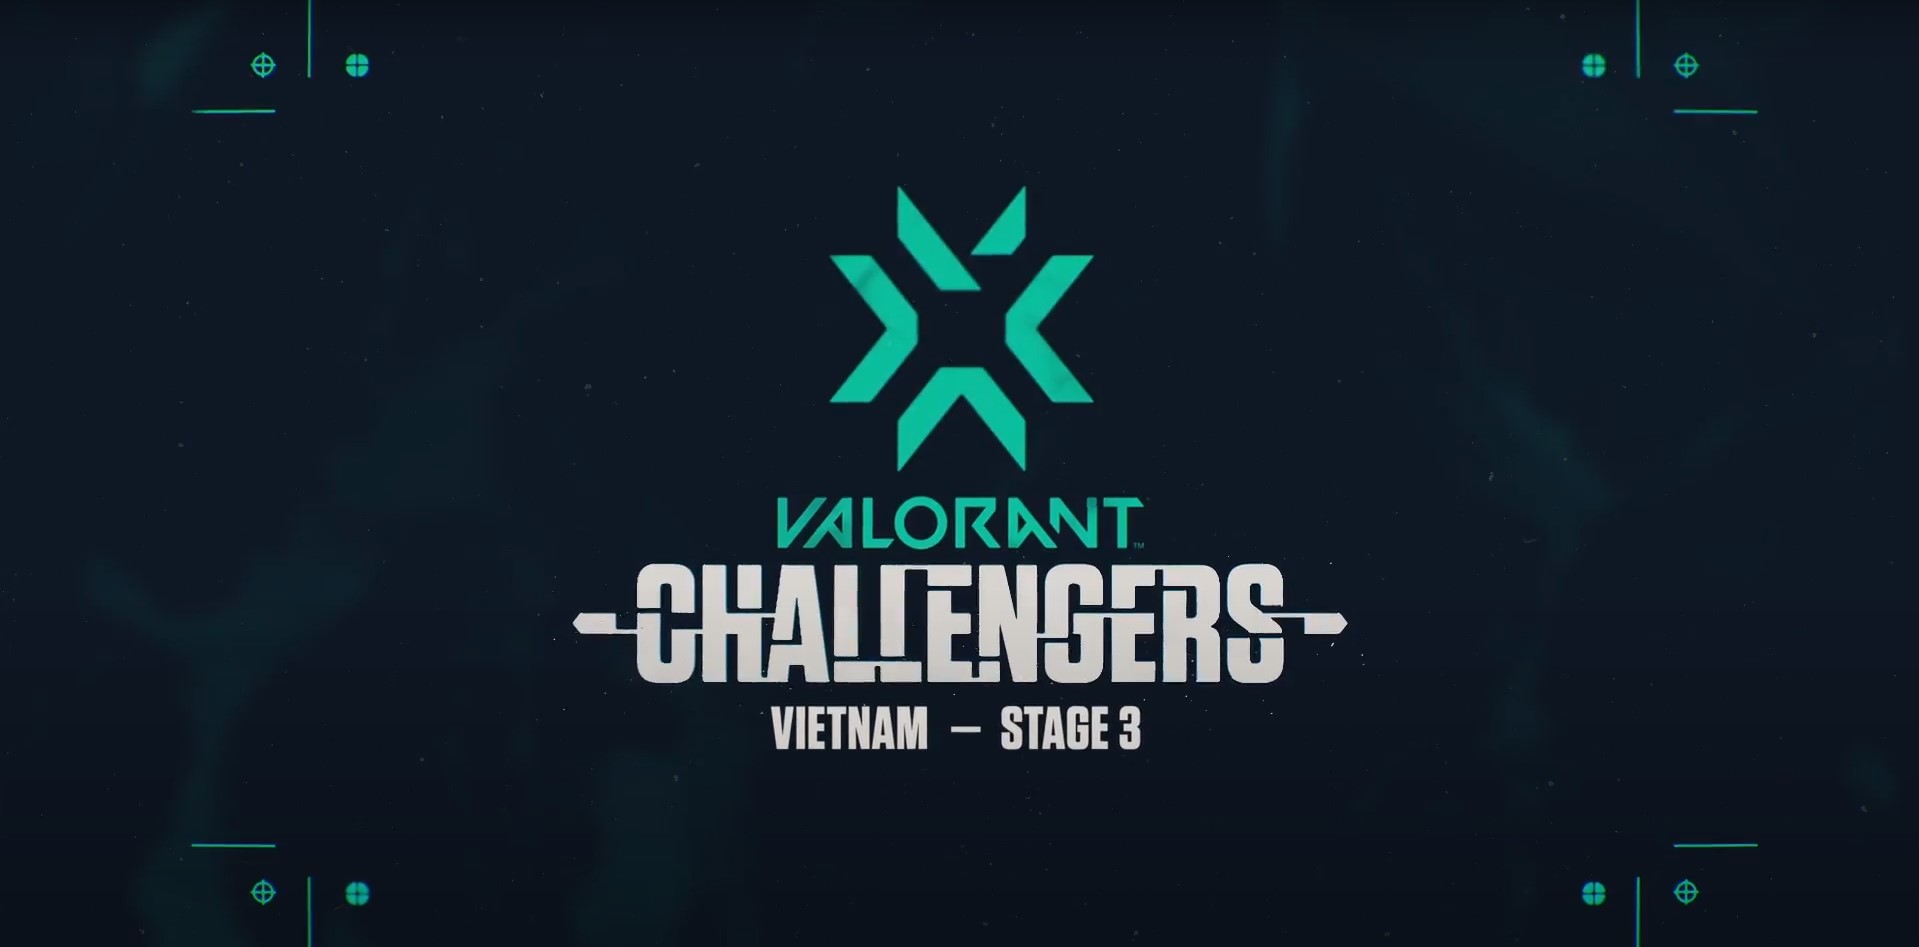 VALORANT Champions Tour: Việt Nam Stage 3 Challengers 1 chính thức mở đăng ký